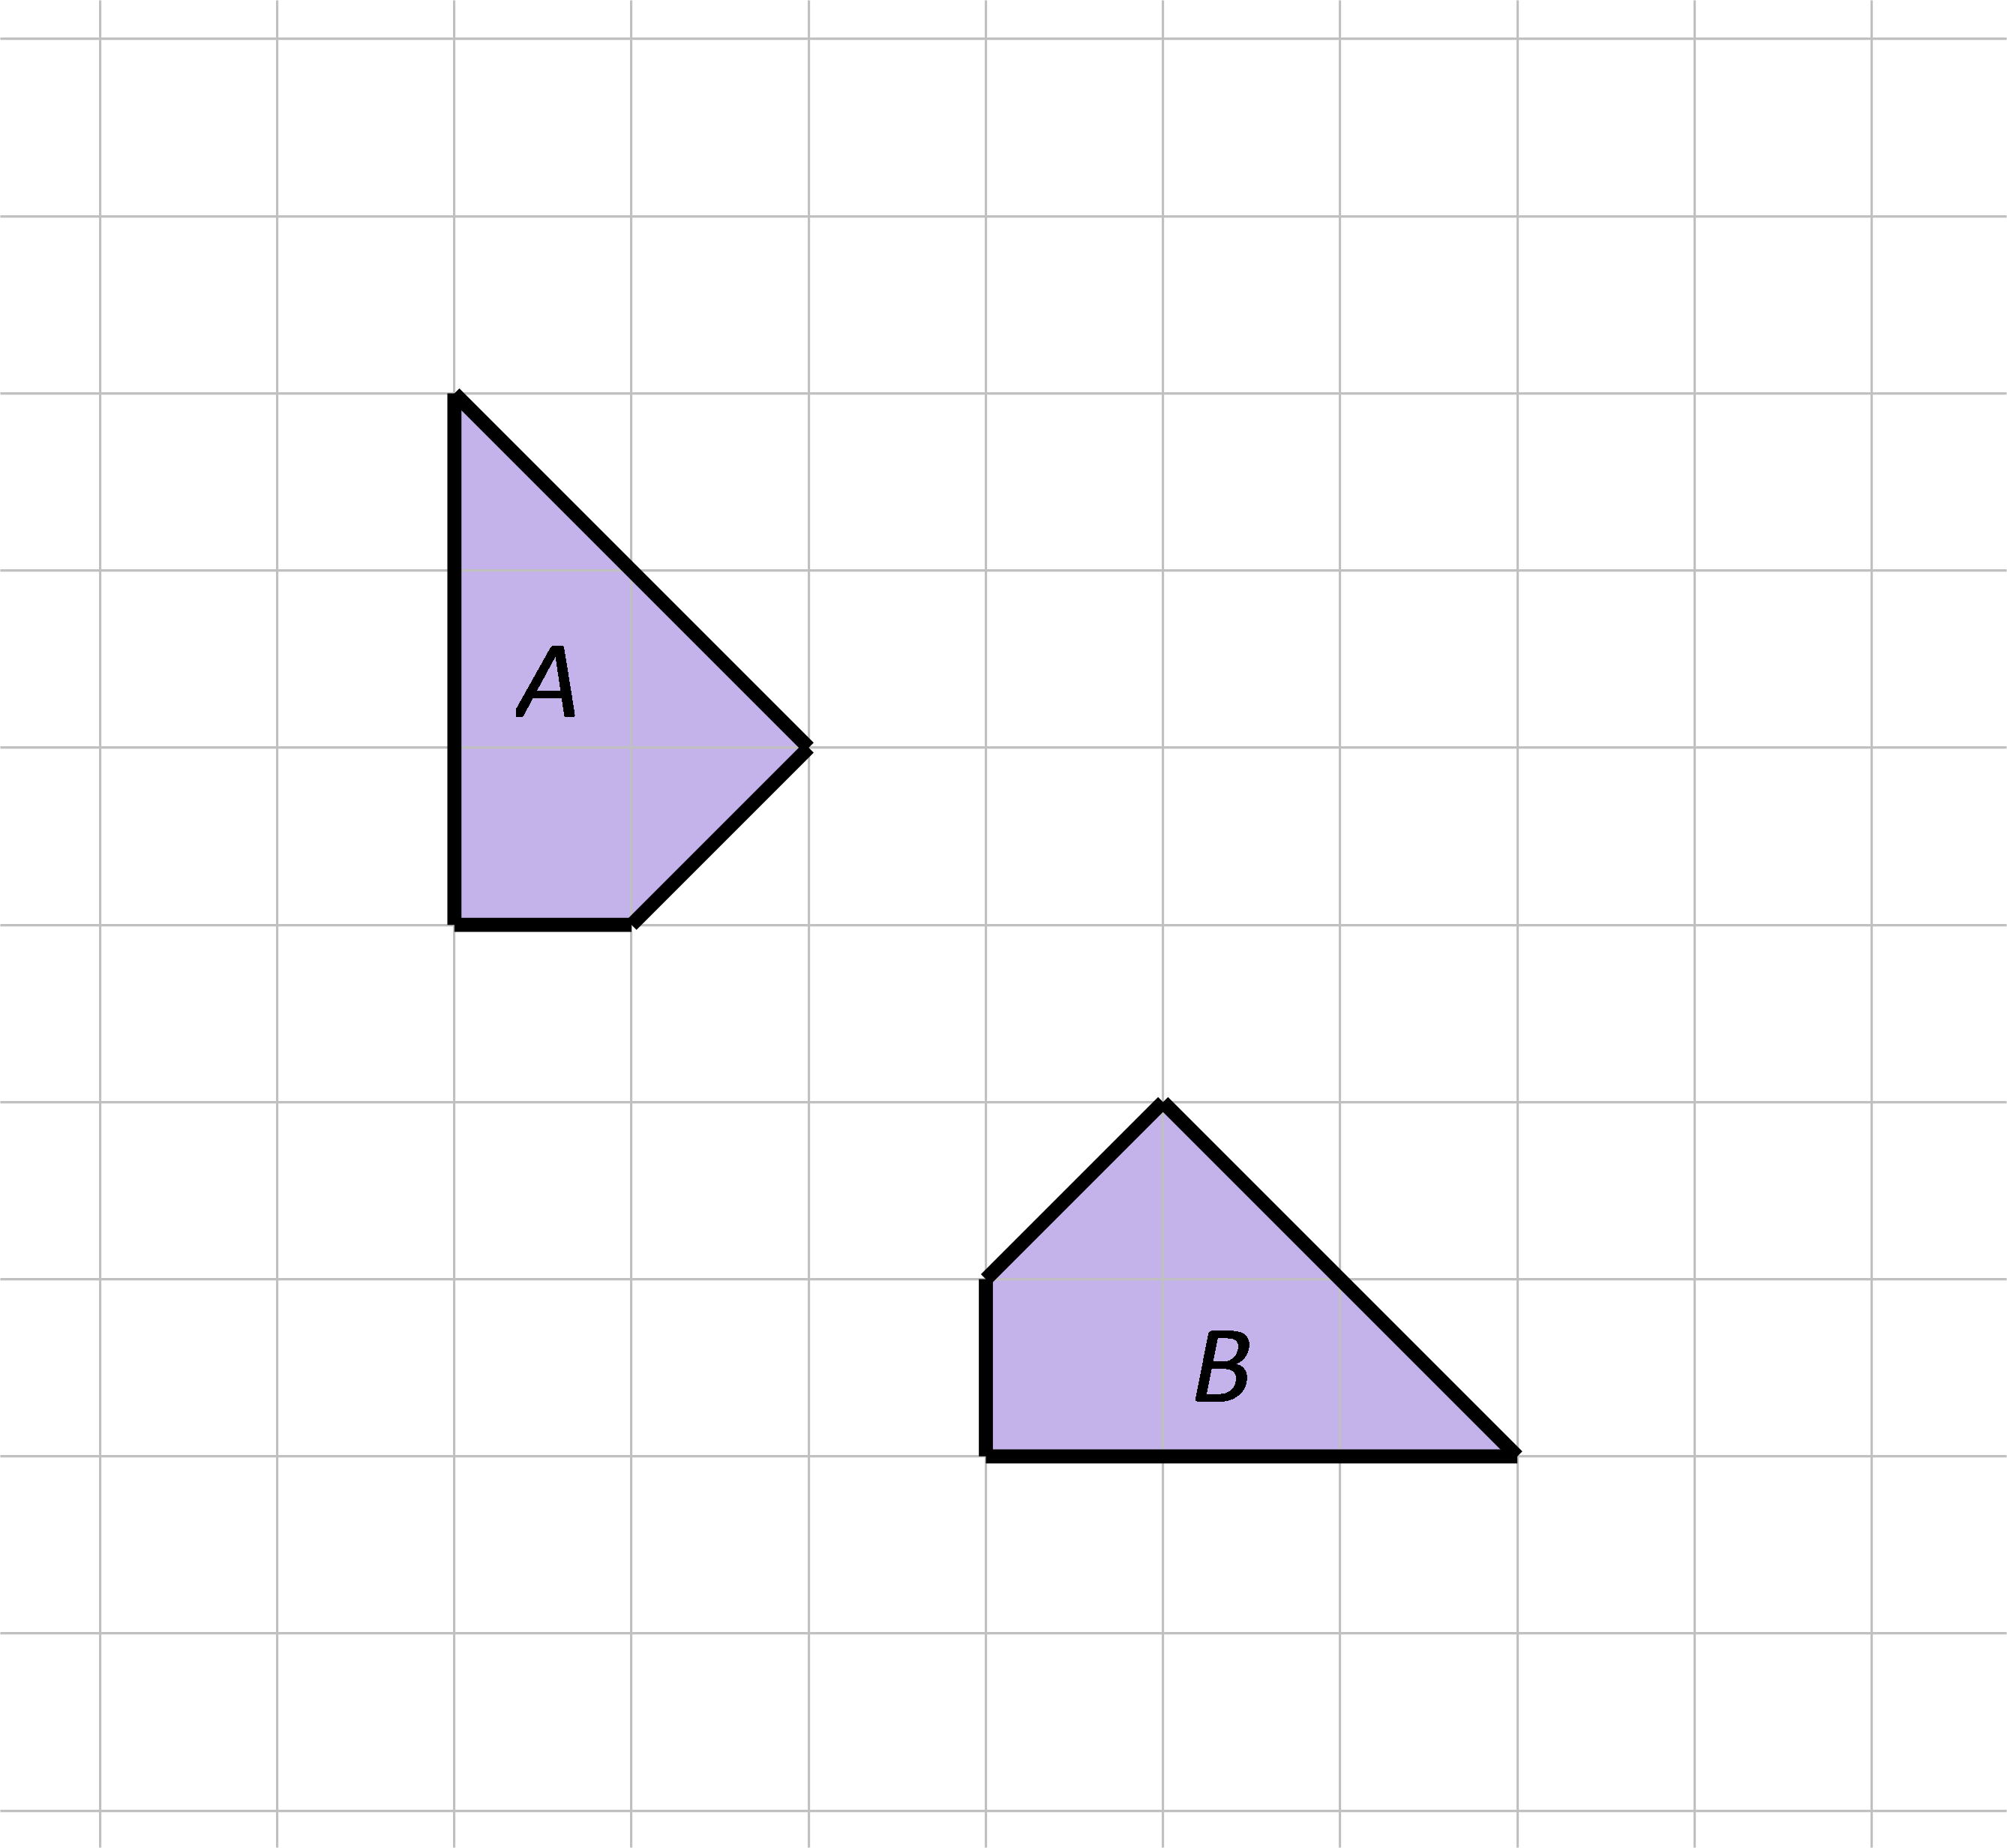 Slike prikazuju dva četverokuta u mreži kvadratića.